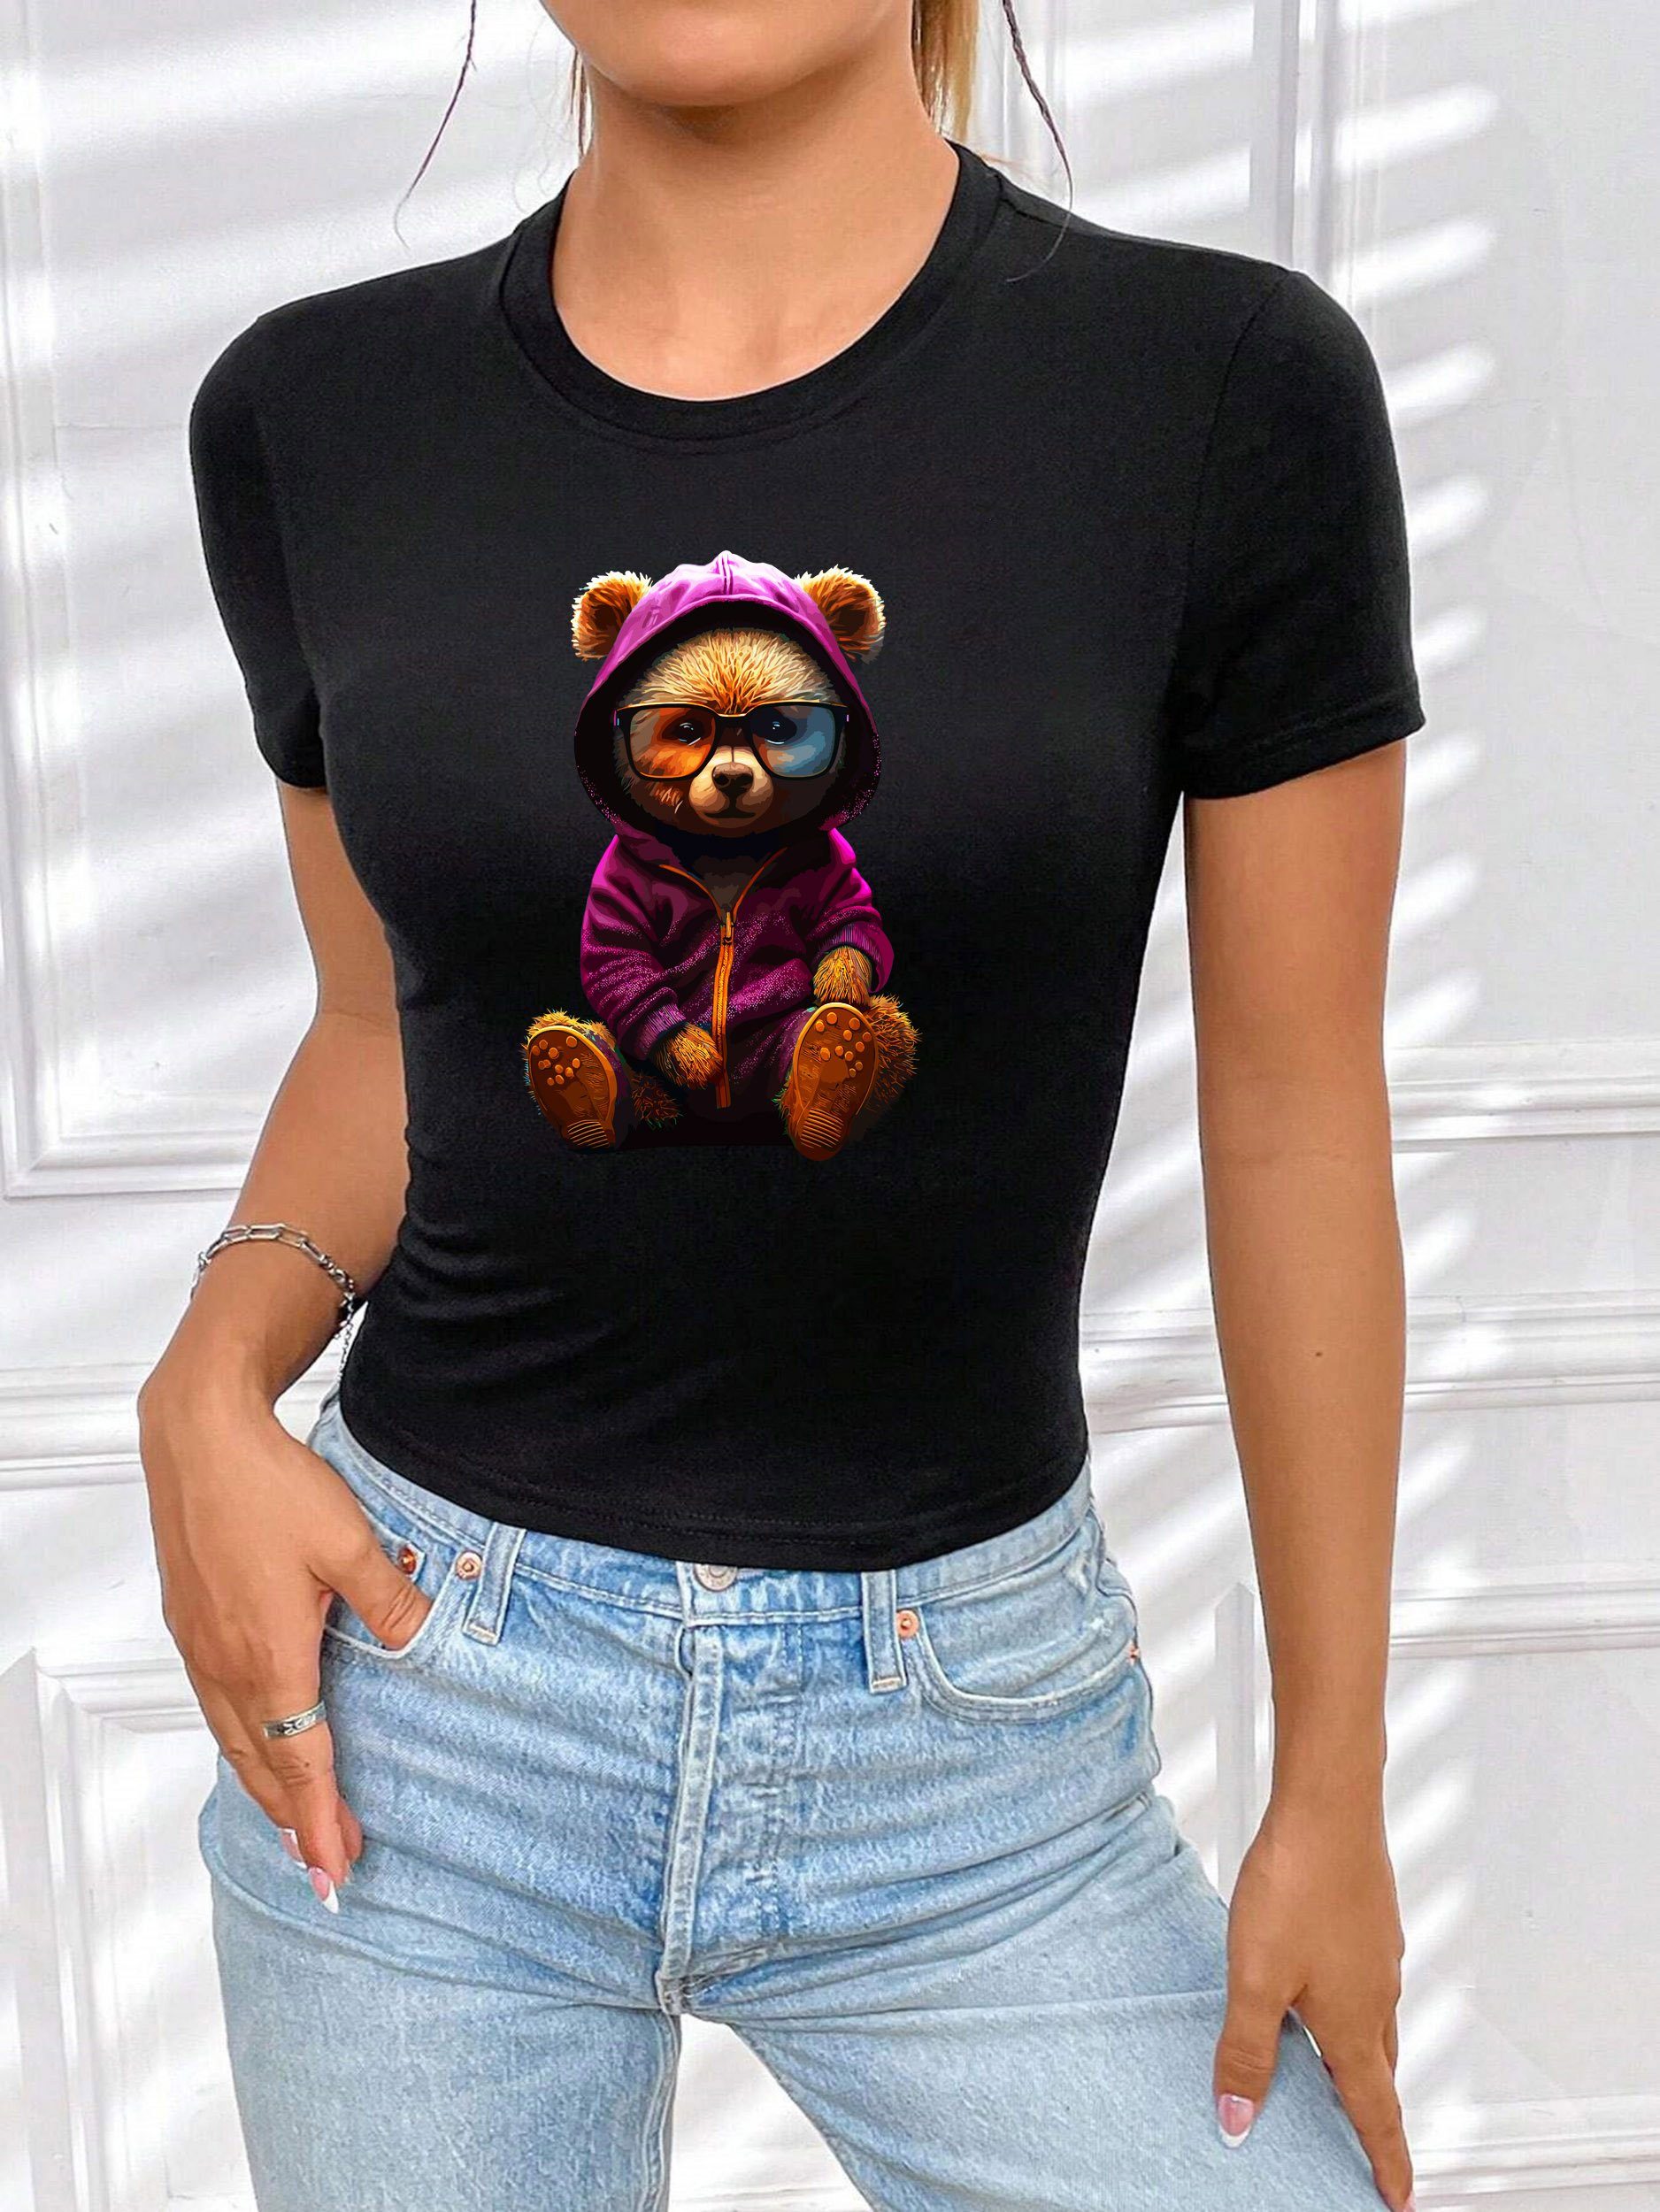 Print-Shirt Damen Teddybär Bär Brille süßer Schwarz-Lila Top Unifarbe Baumwolle, RMK T-Shirt Sommer Originaldesign, aus lizenziertem Rundhals mit